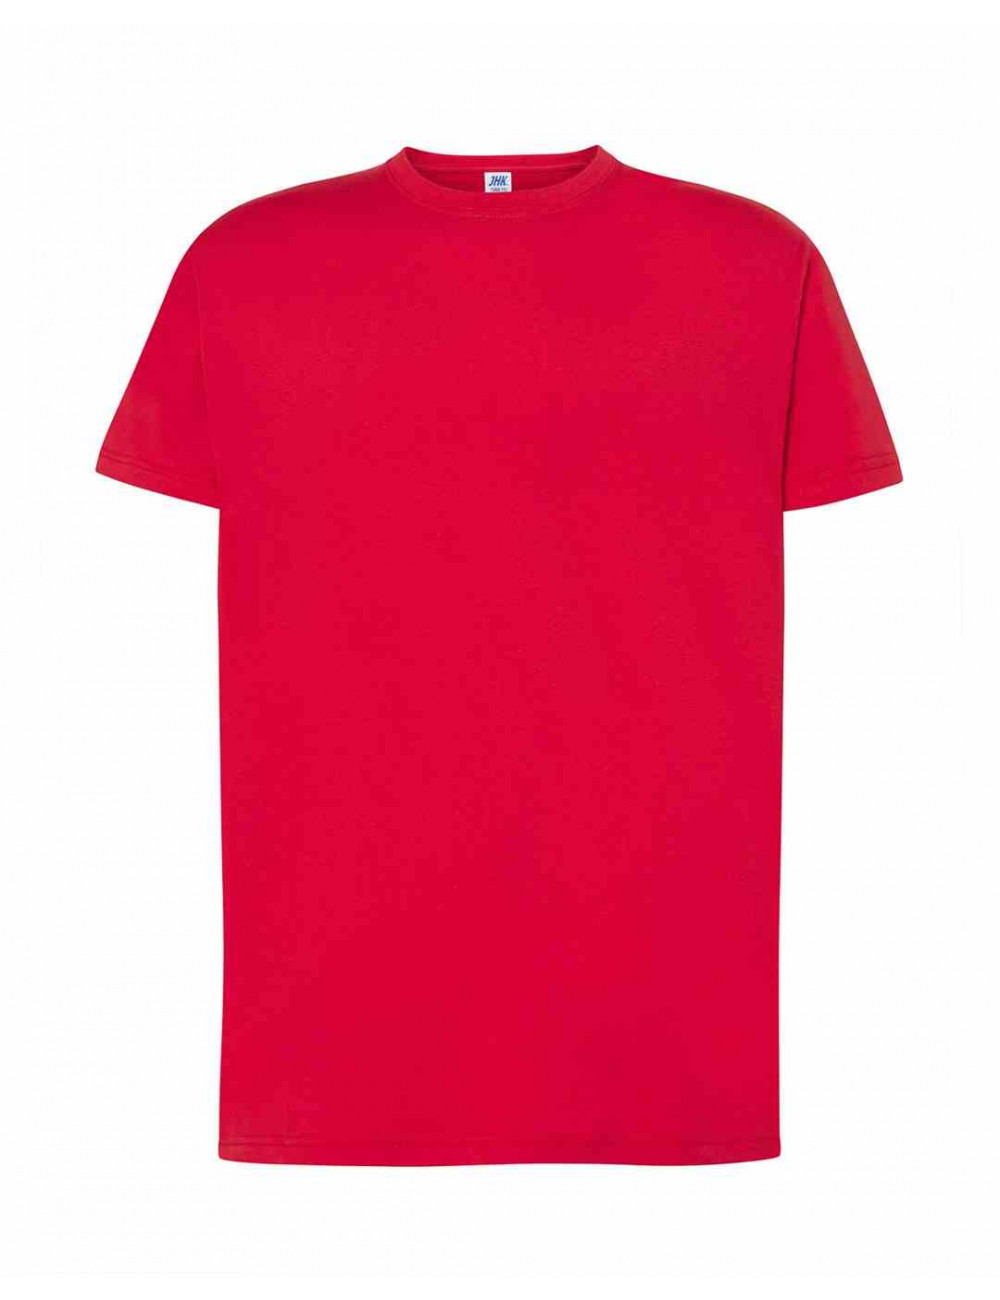 Koszulka męska tsra 150 regular t-shirt cr - canary red Jhk